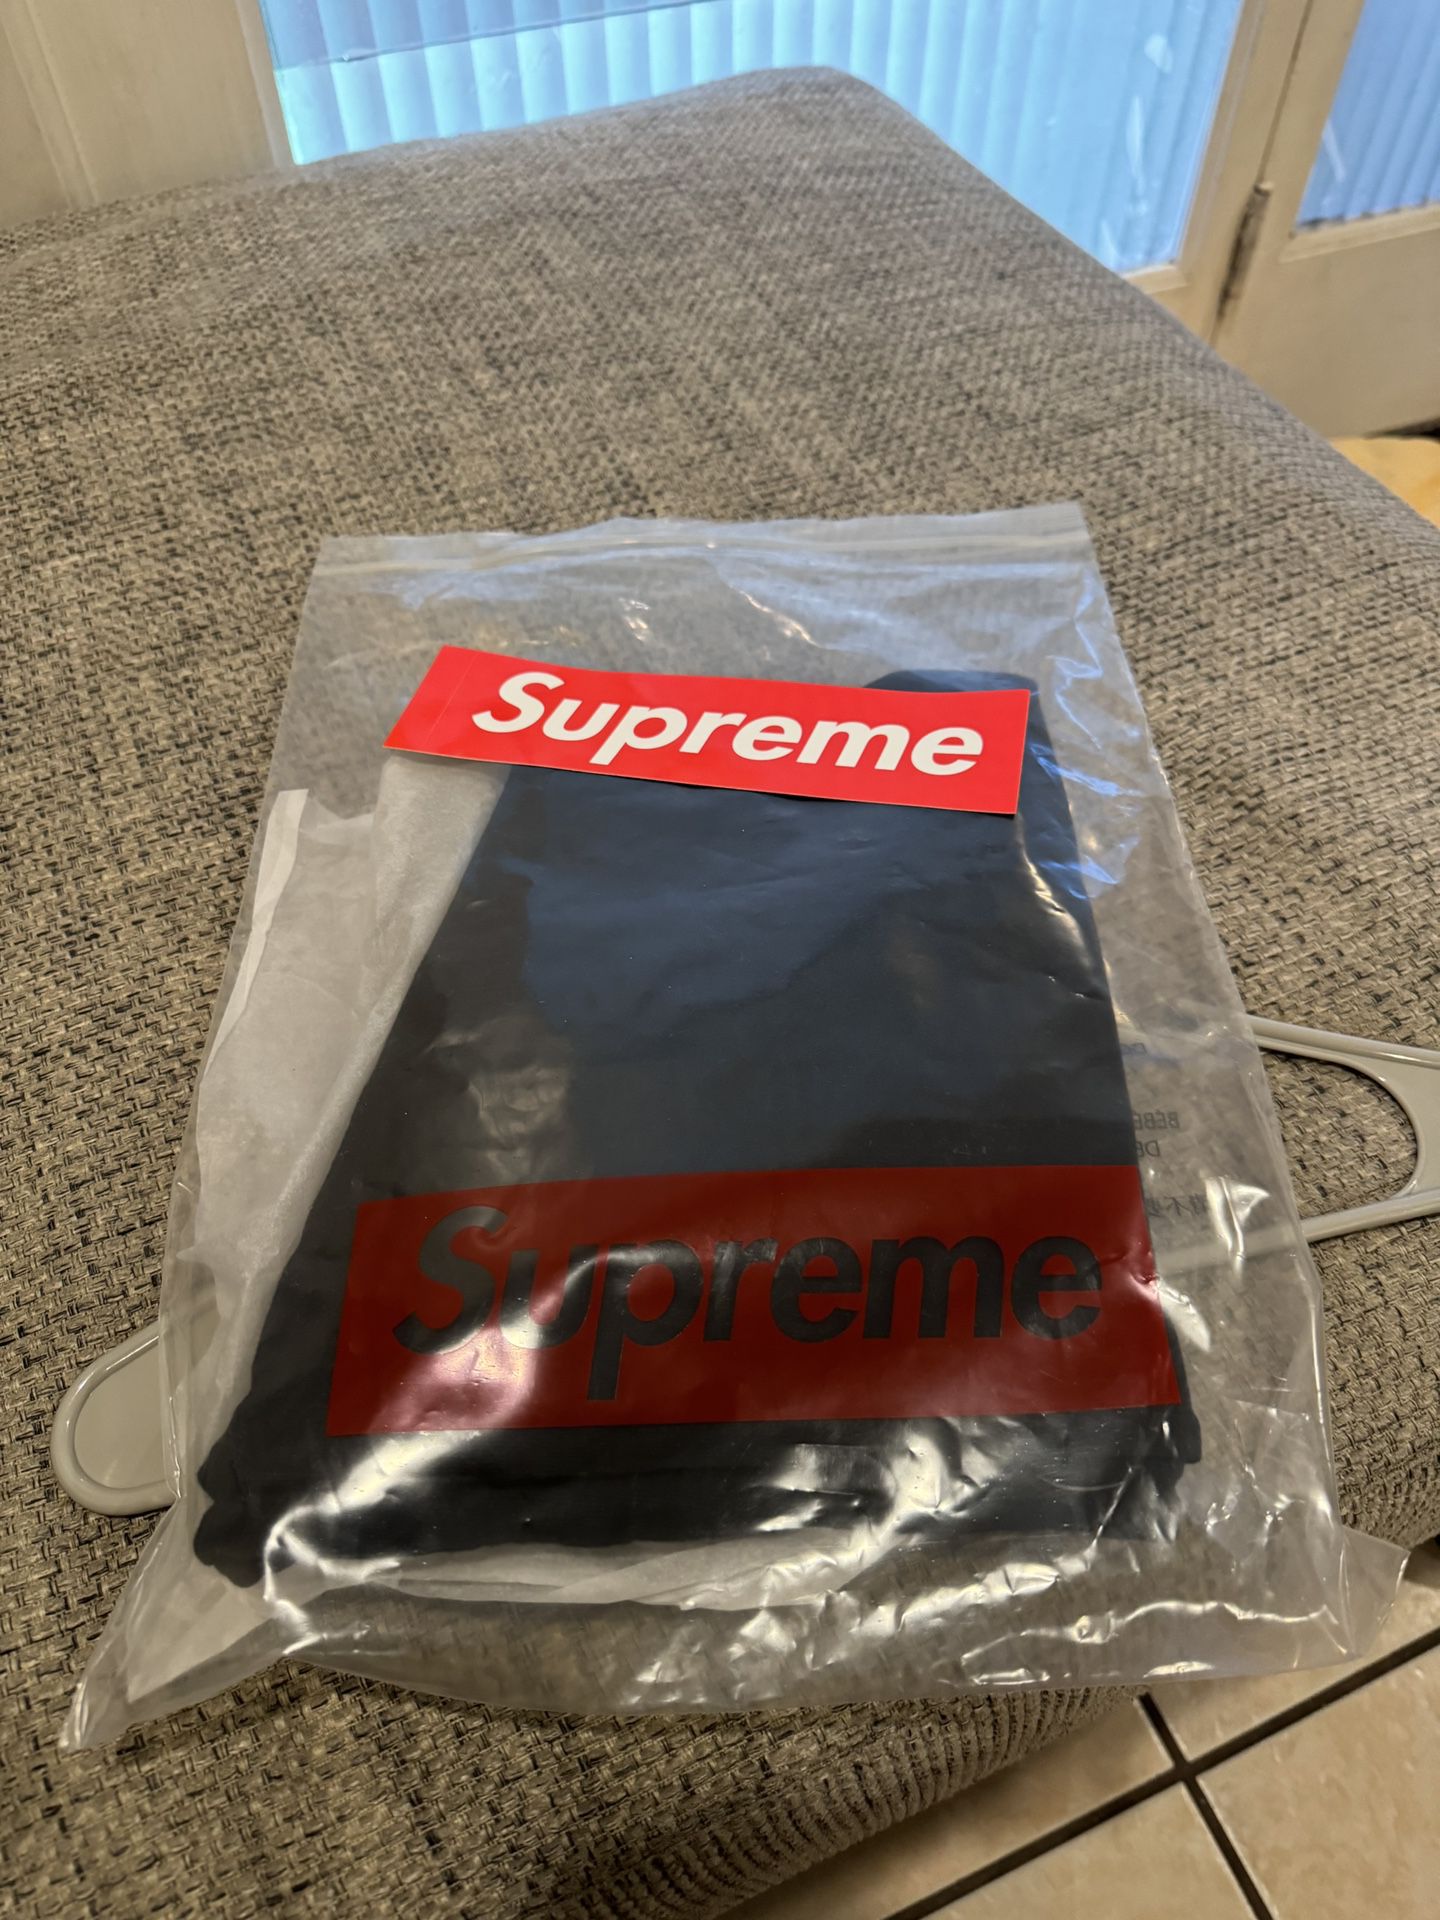 supreme shirt size m